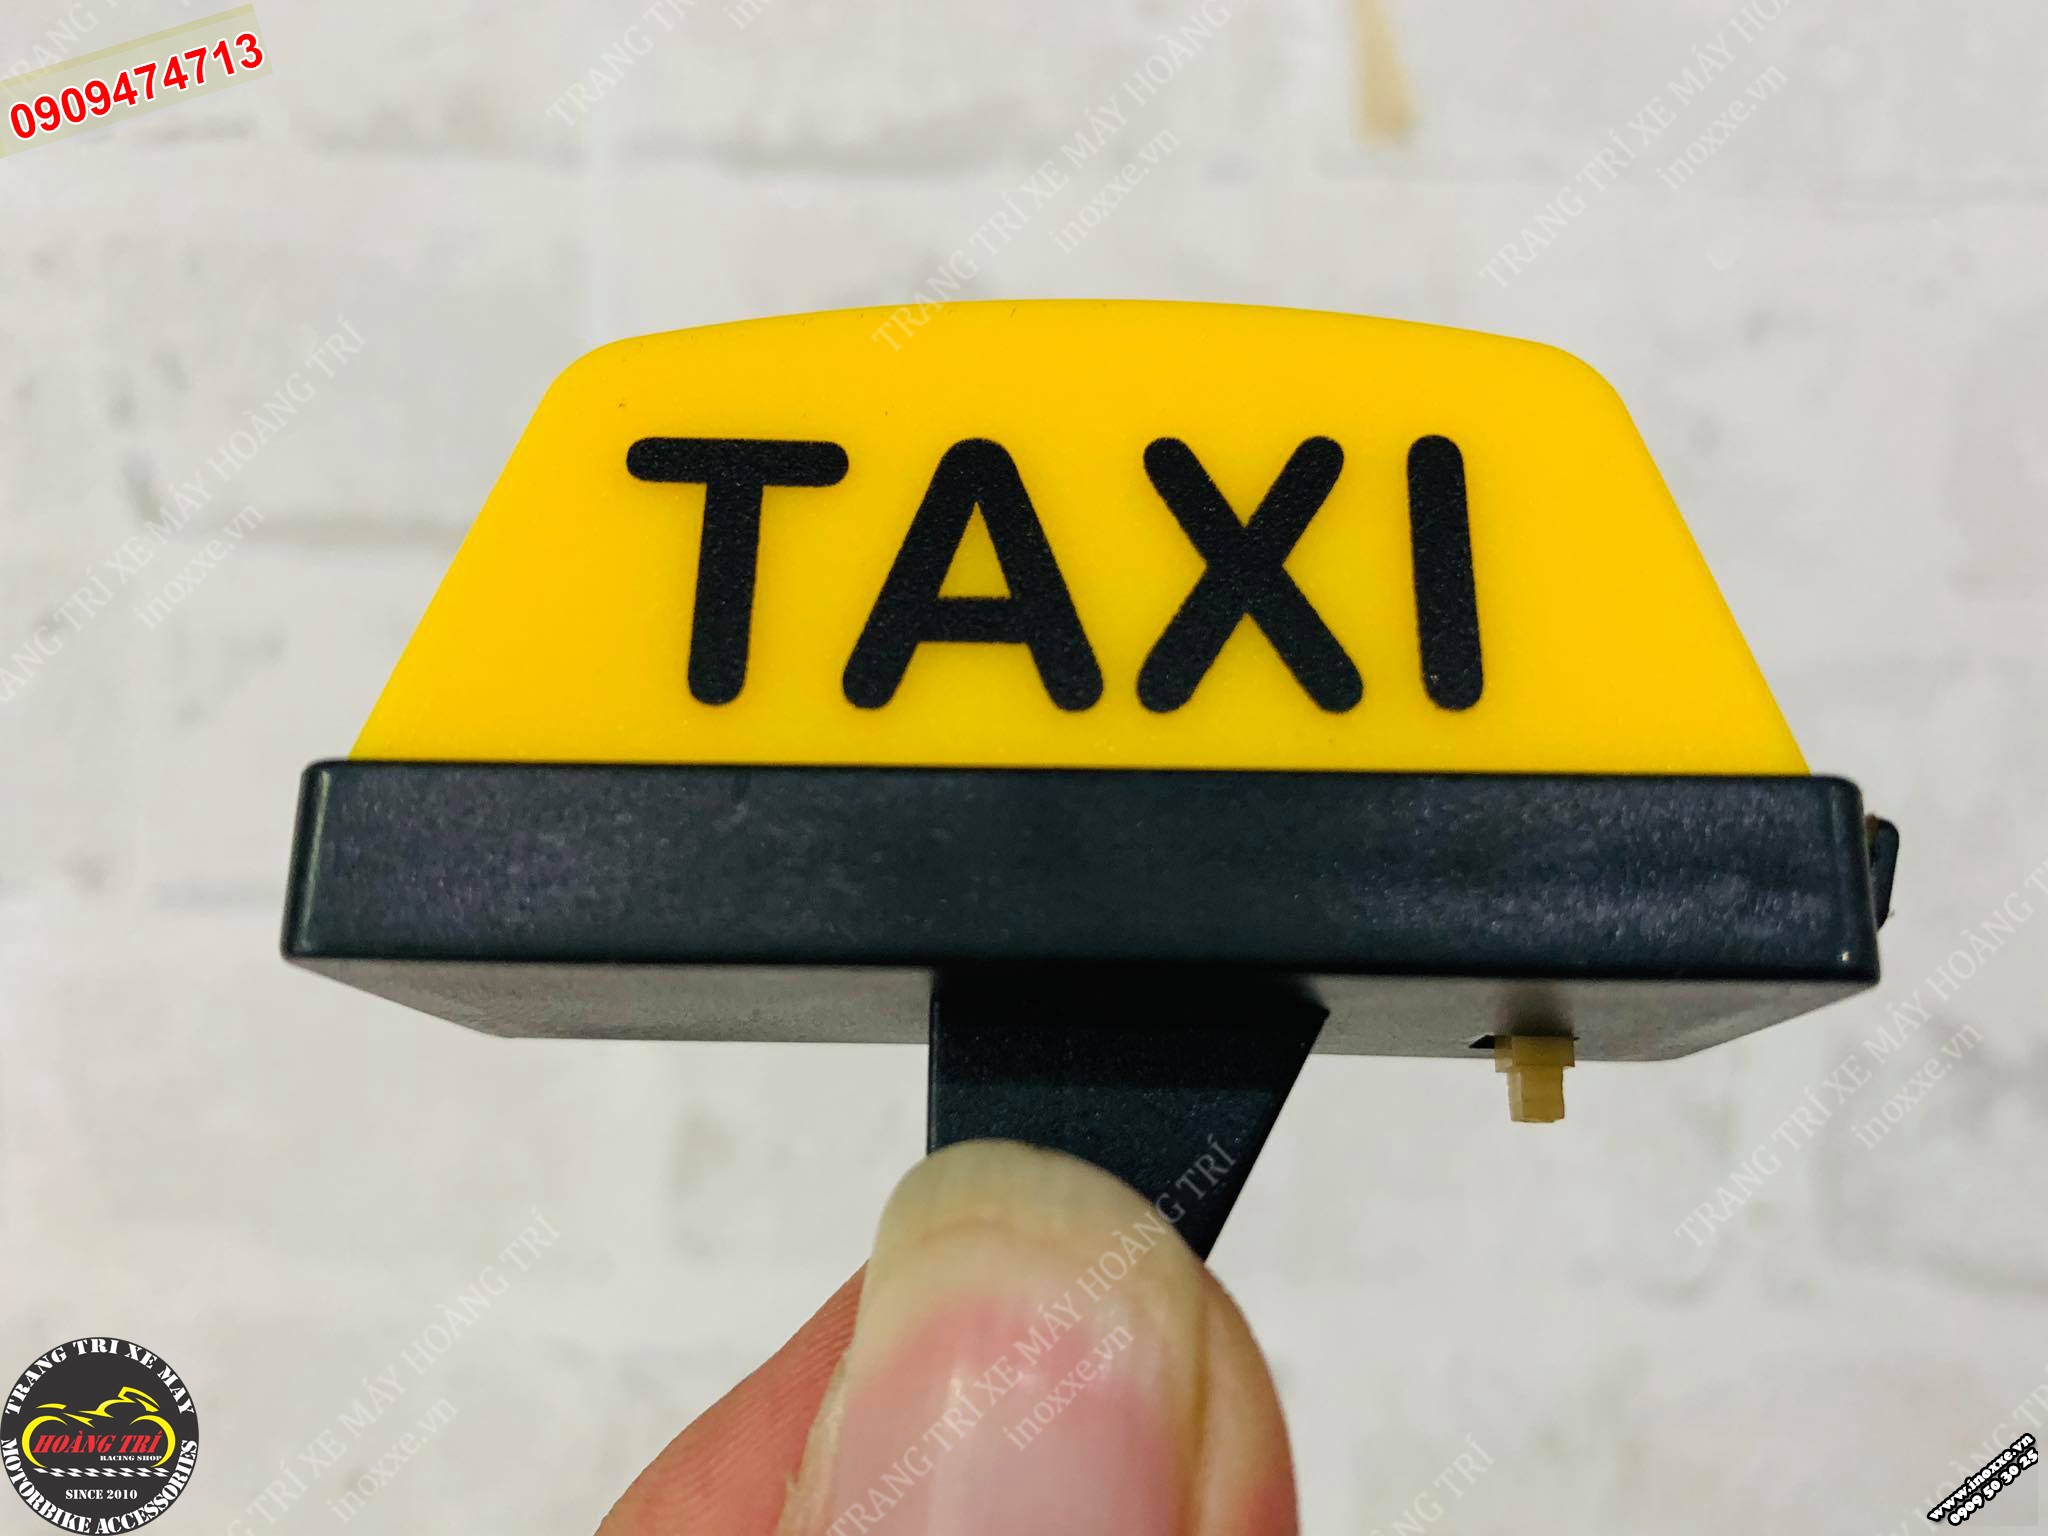 Hộp đèn Taxi có thể đổi màu, đổi hiệu ứng chớp tắt